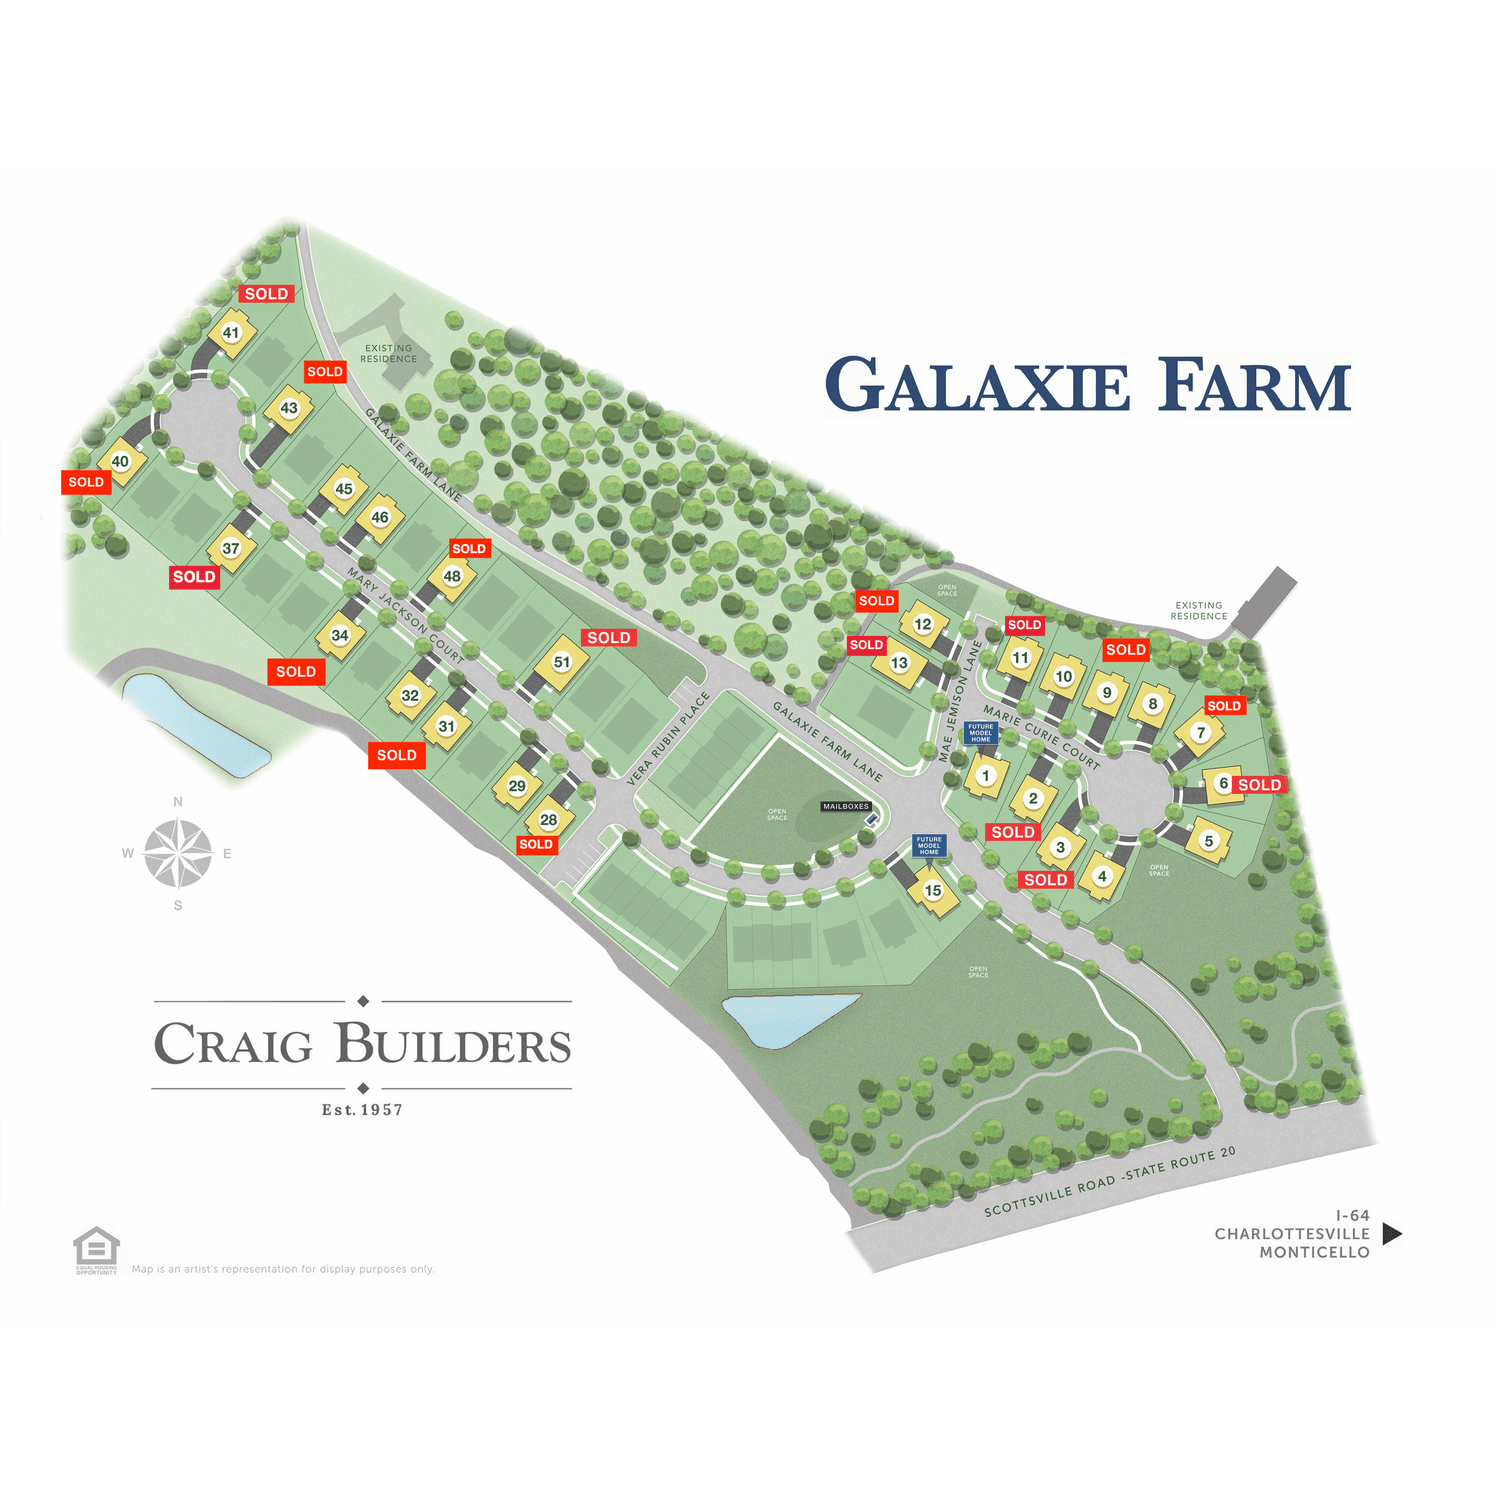 12. Galaxie Farm byggnad vid 4006 Marie Curie Court, Charlottesville, VA 22902